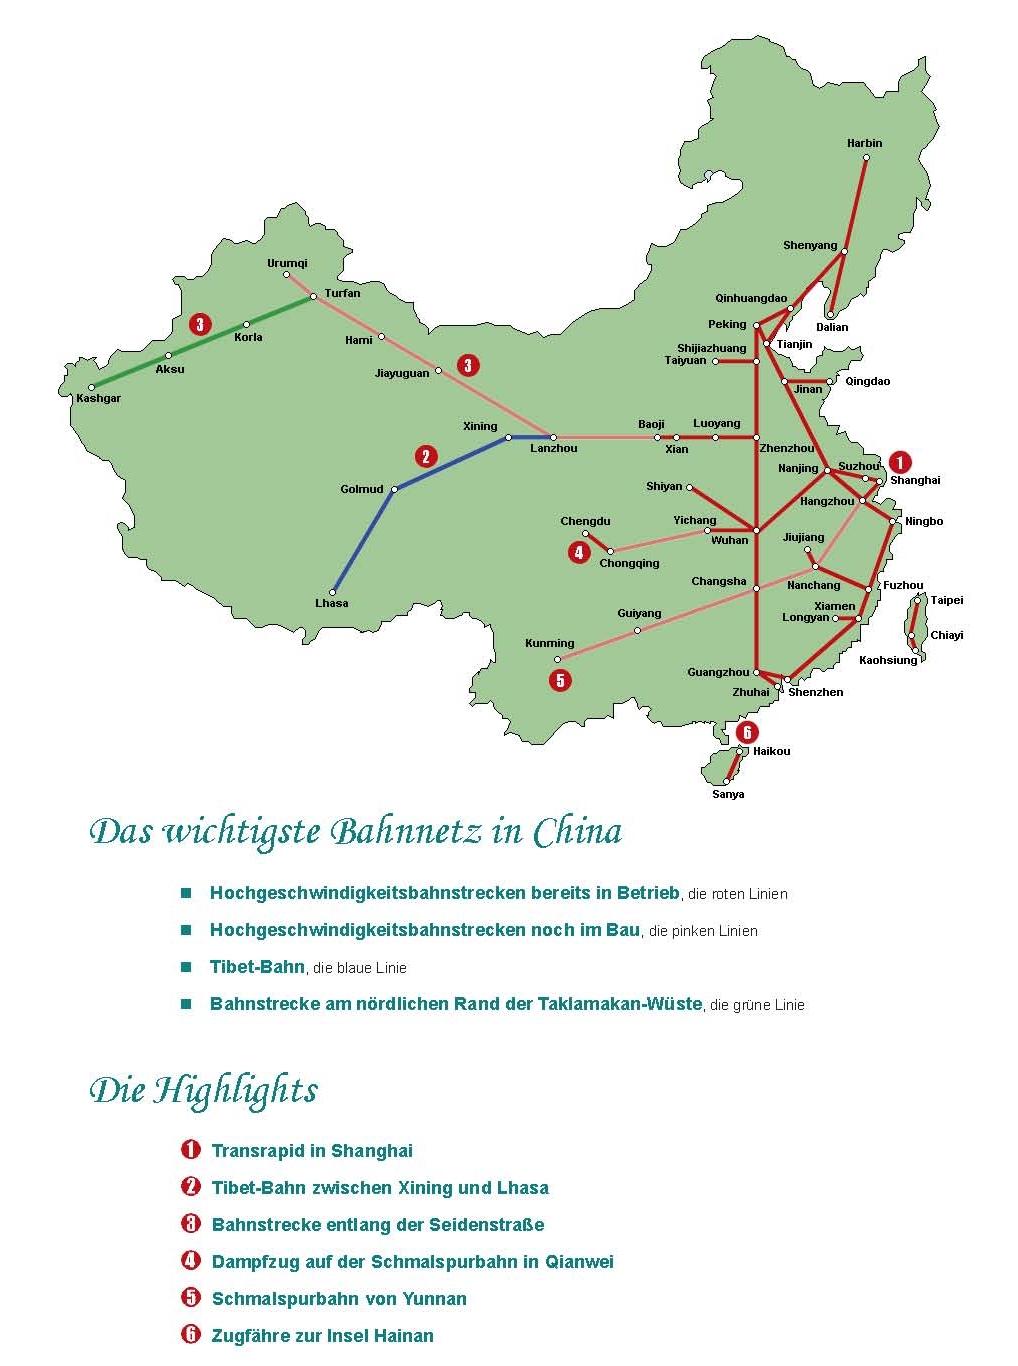 China Bahnnetz, Bahnreisen und Highlights